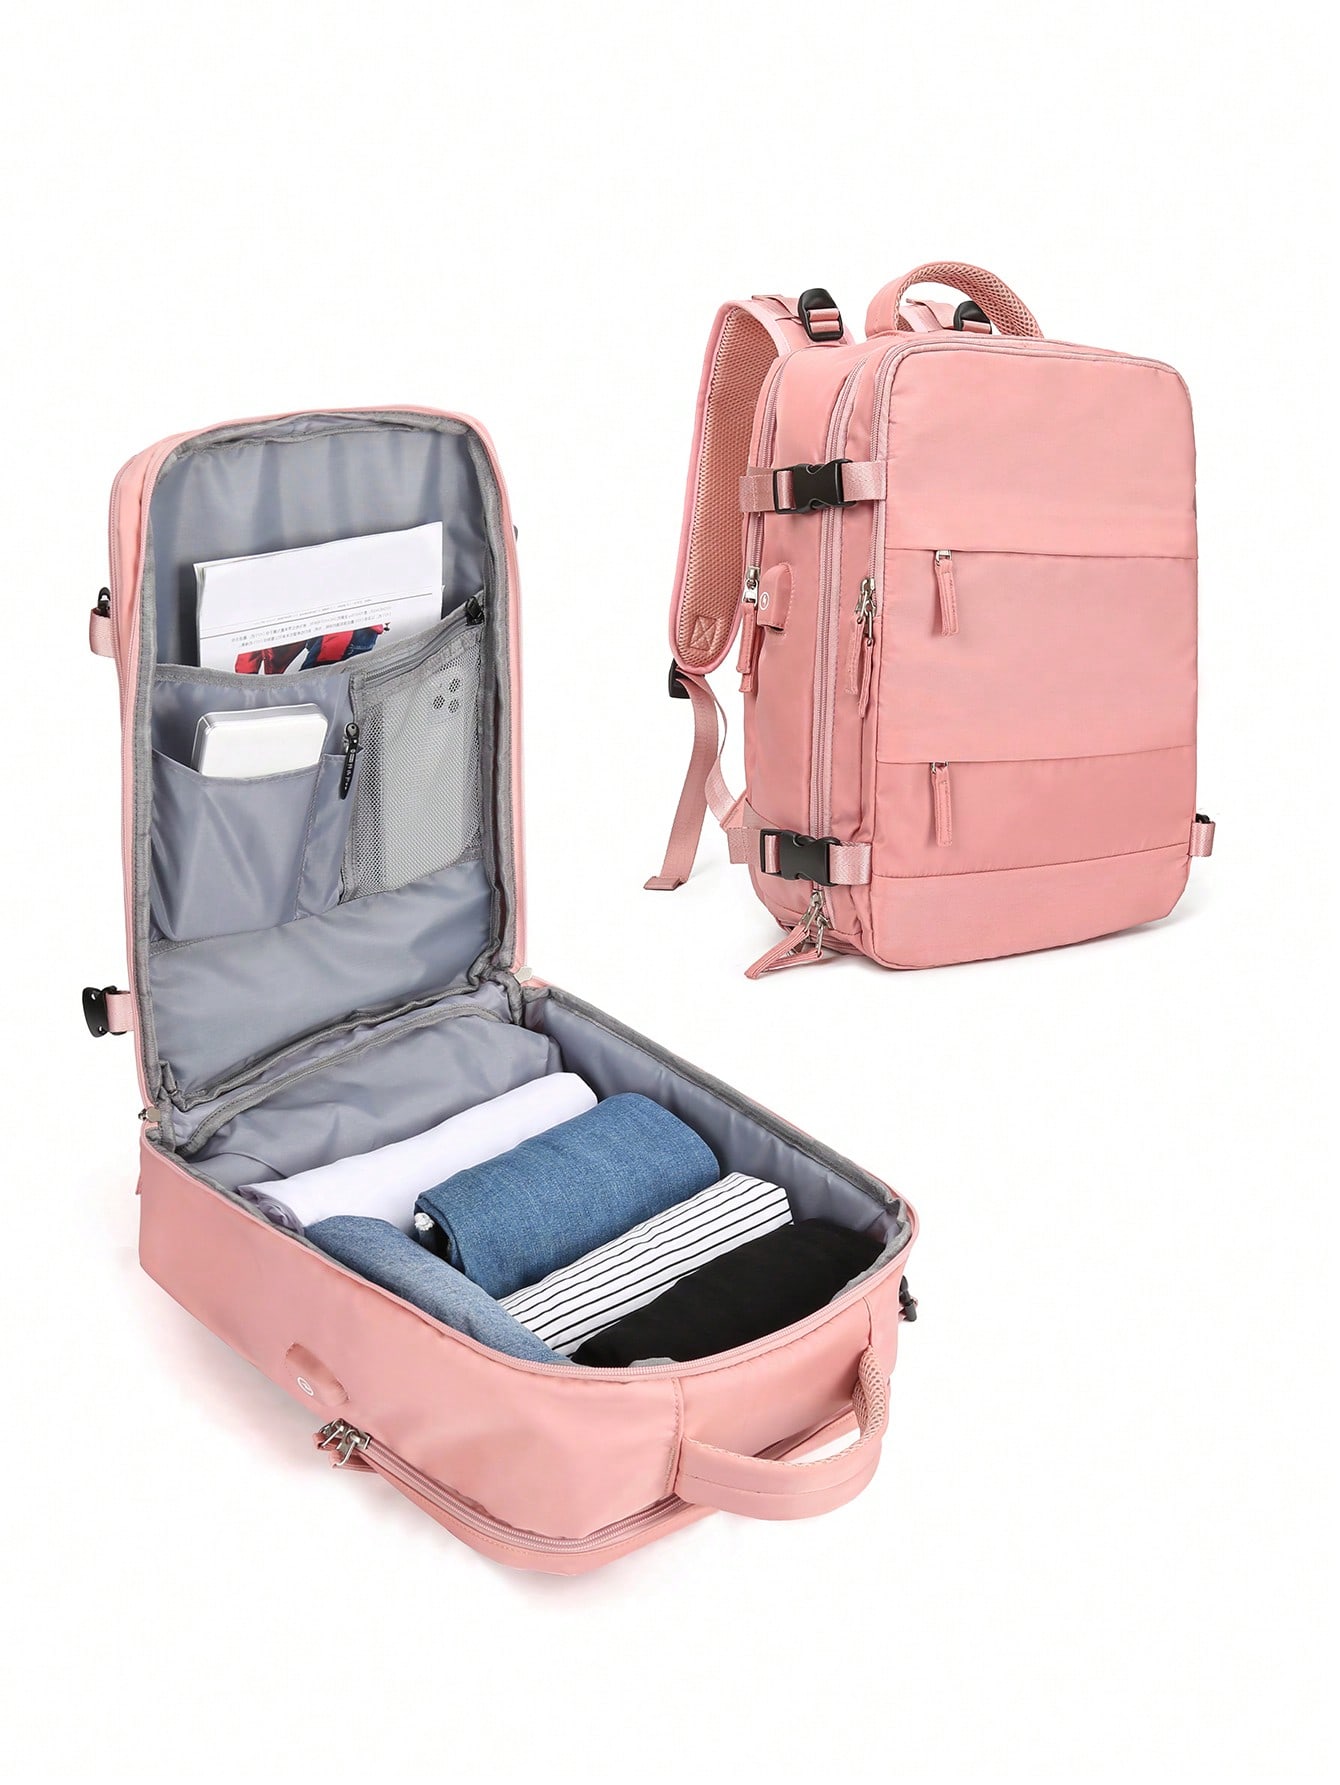 Женский дорожный рюкзак с USB-портом для зарядки, розовый